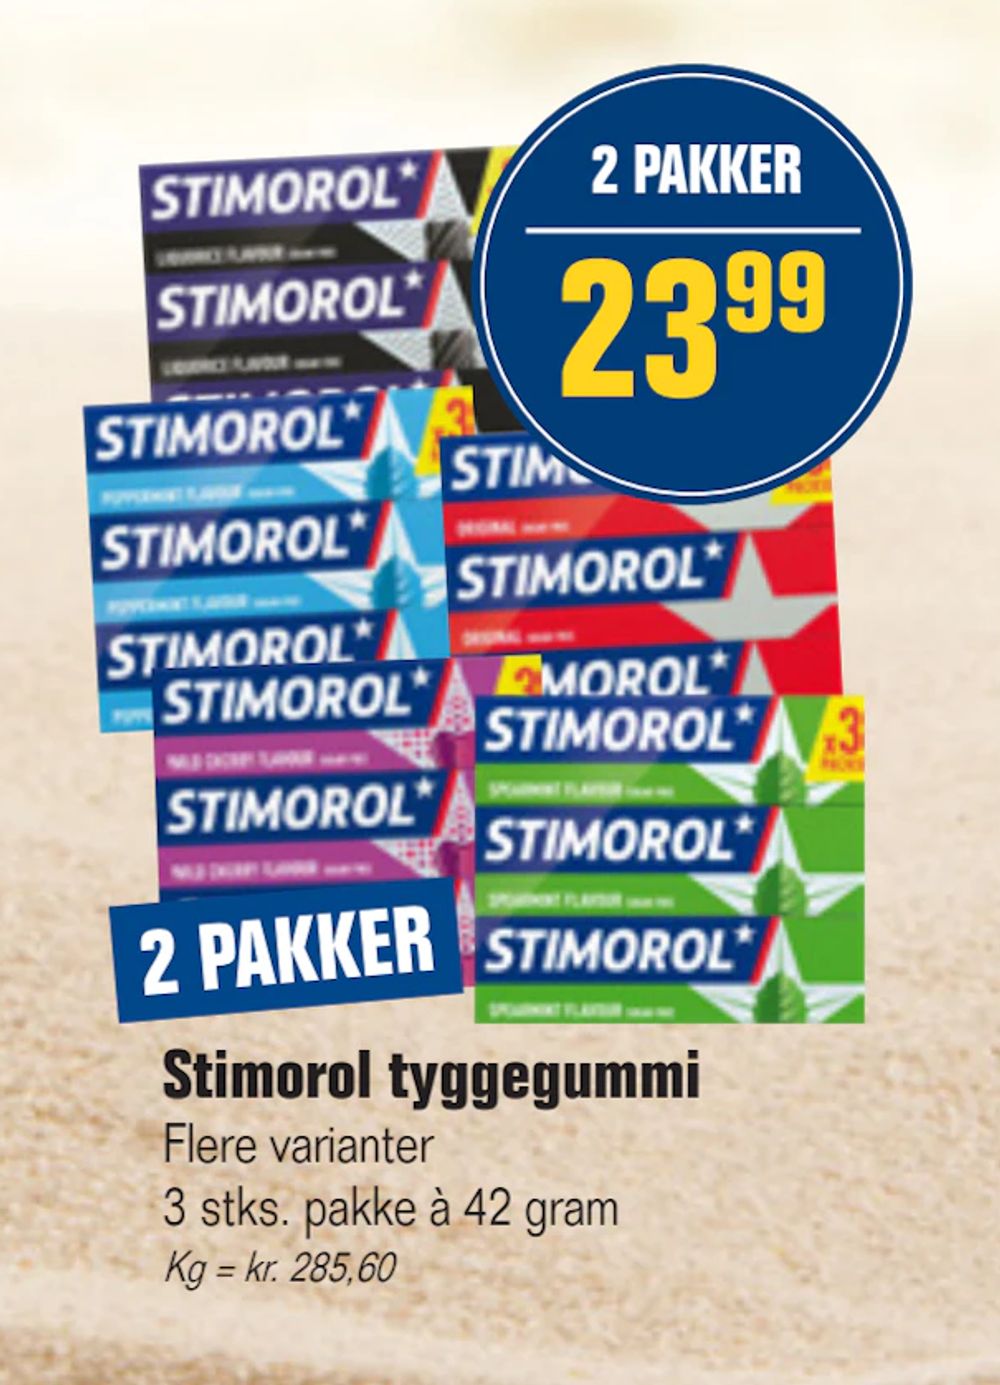 Tilbud på Stimorol tyggegummi fra Otto Duborg til 23,99 kr.